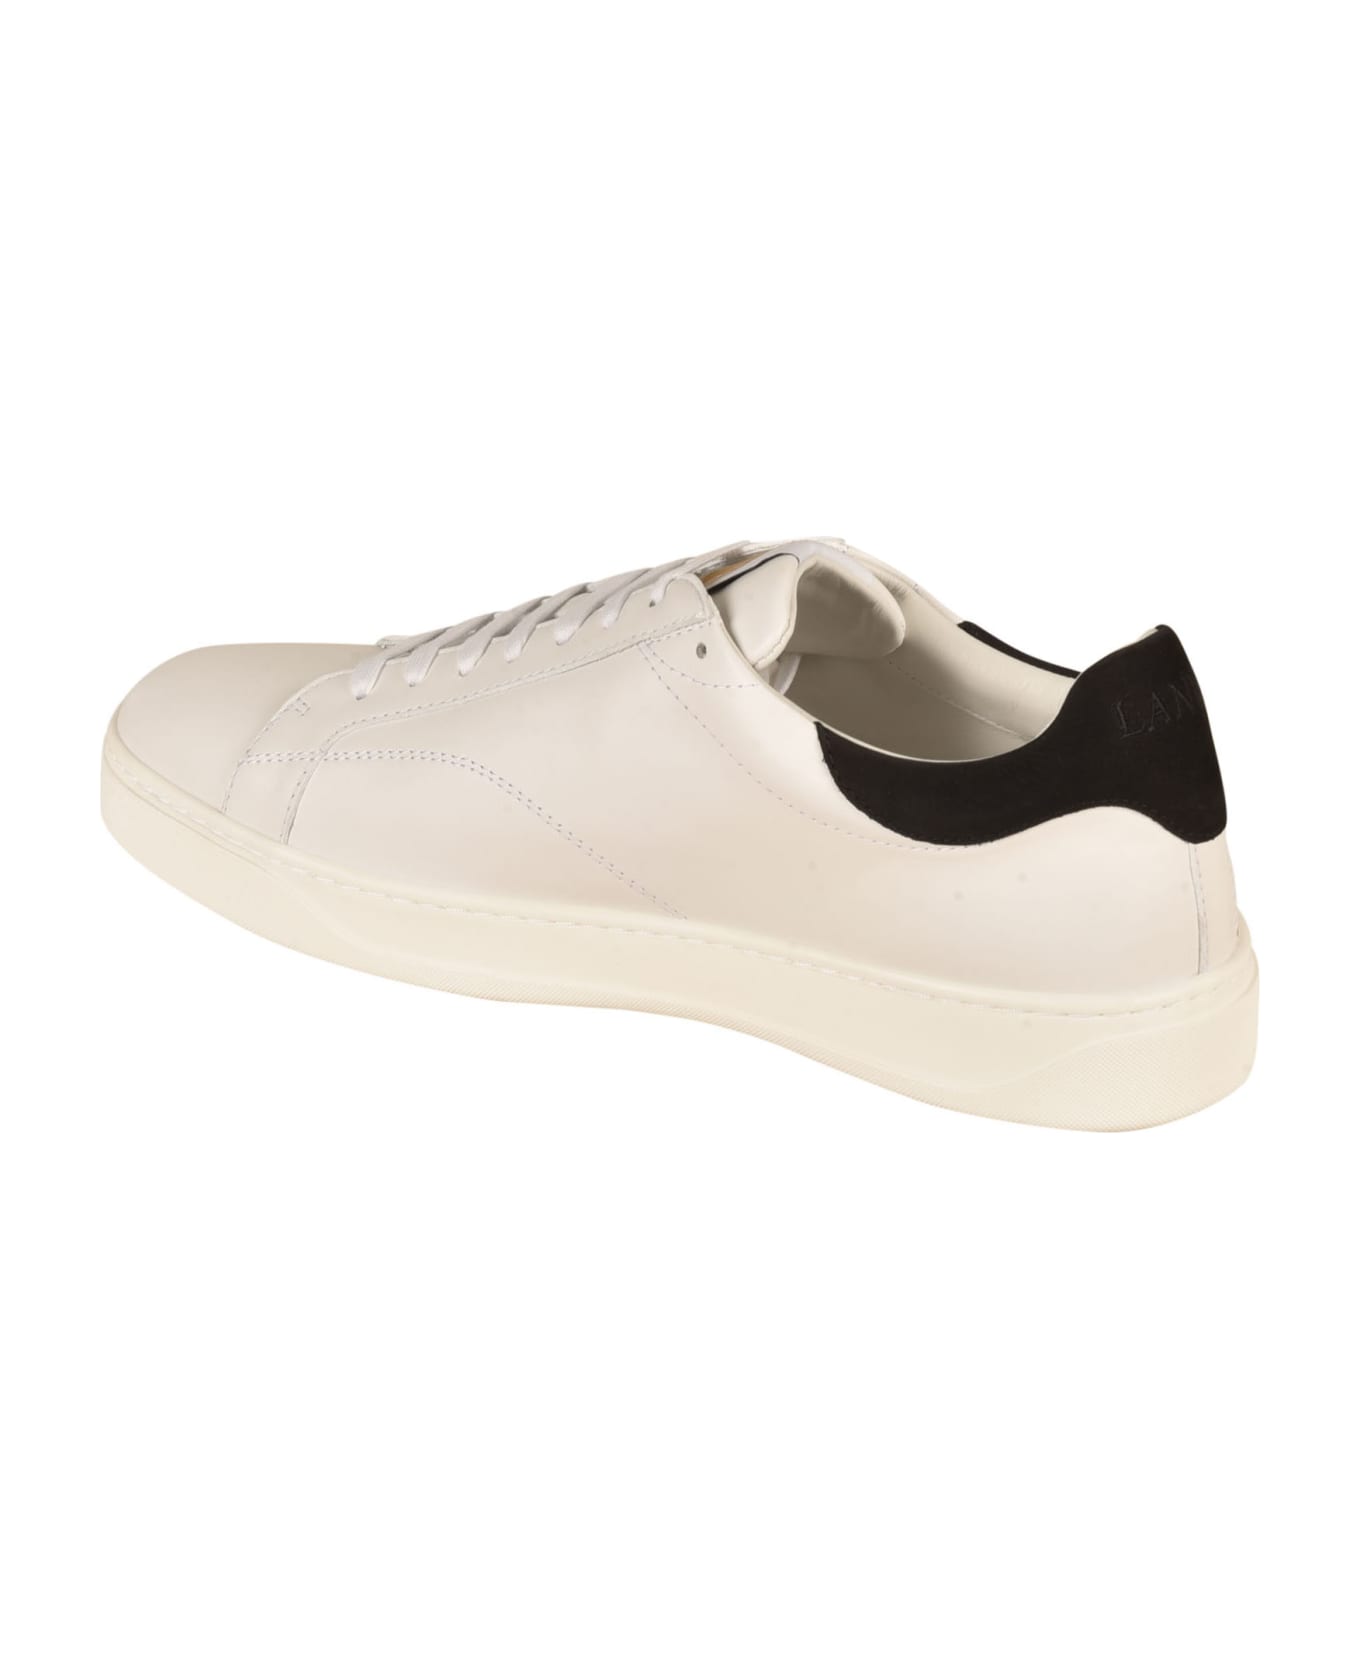 Lanvin Classic Sneakers - White/Black